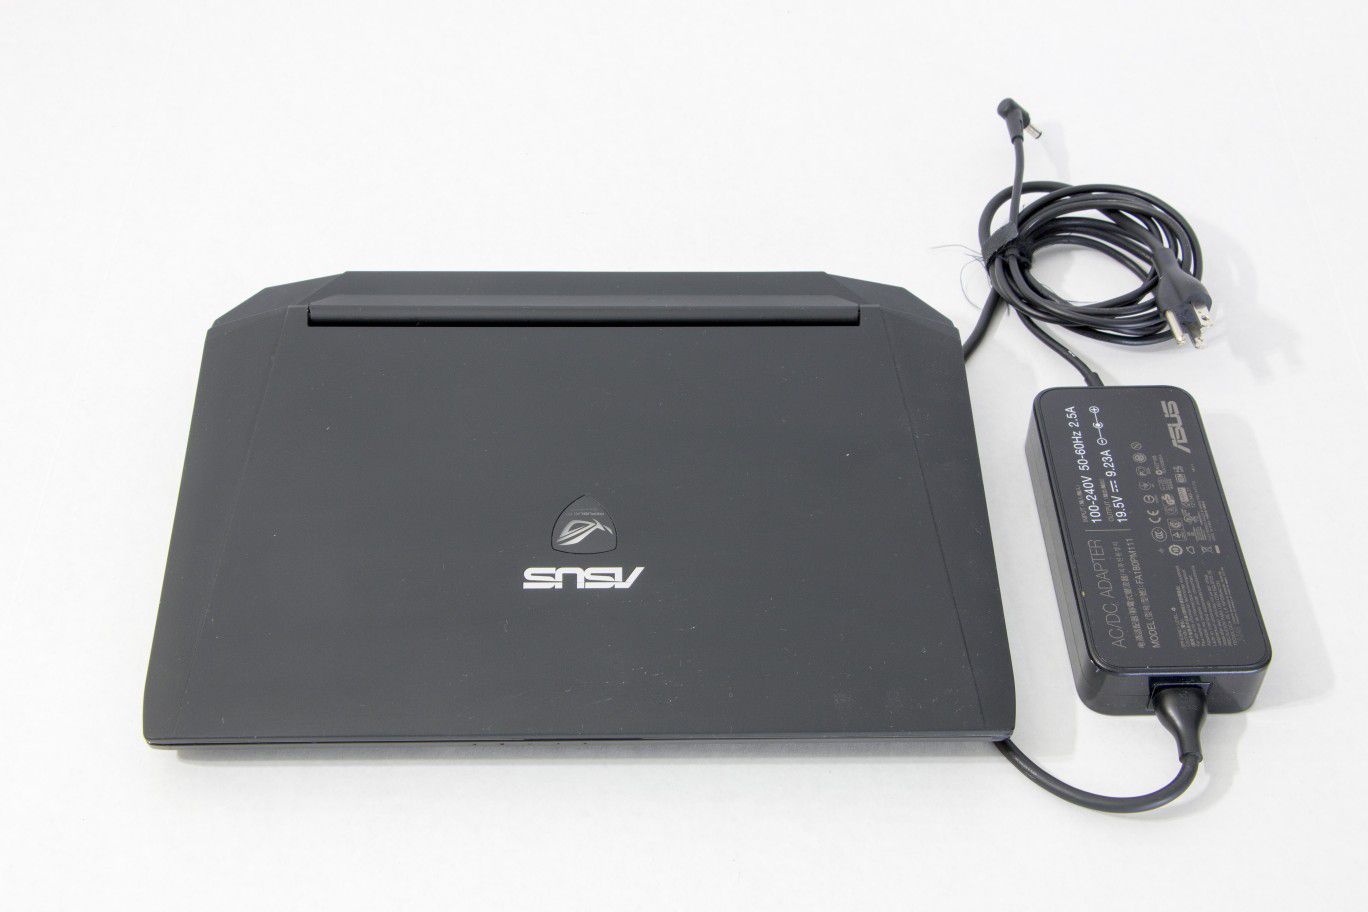 ASUS ROG G46VW - 14” Extreme Mobile Gaming Laptop